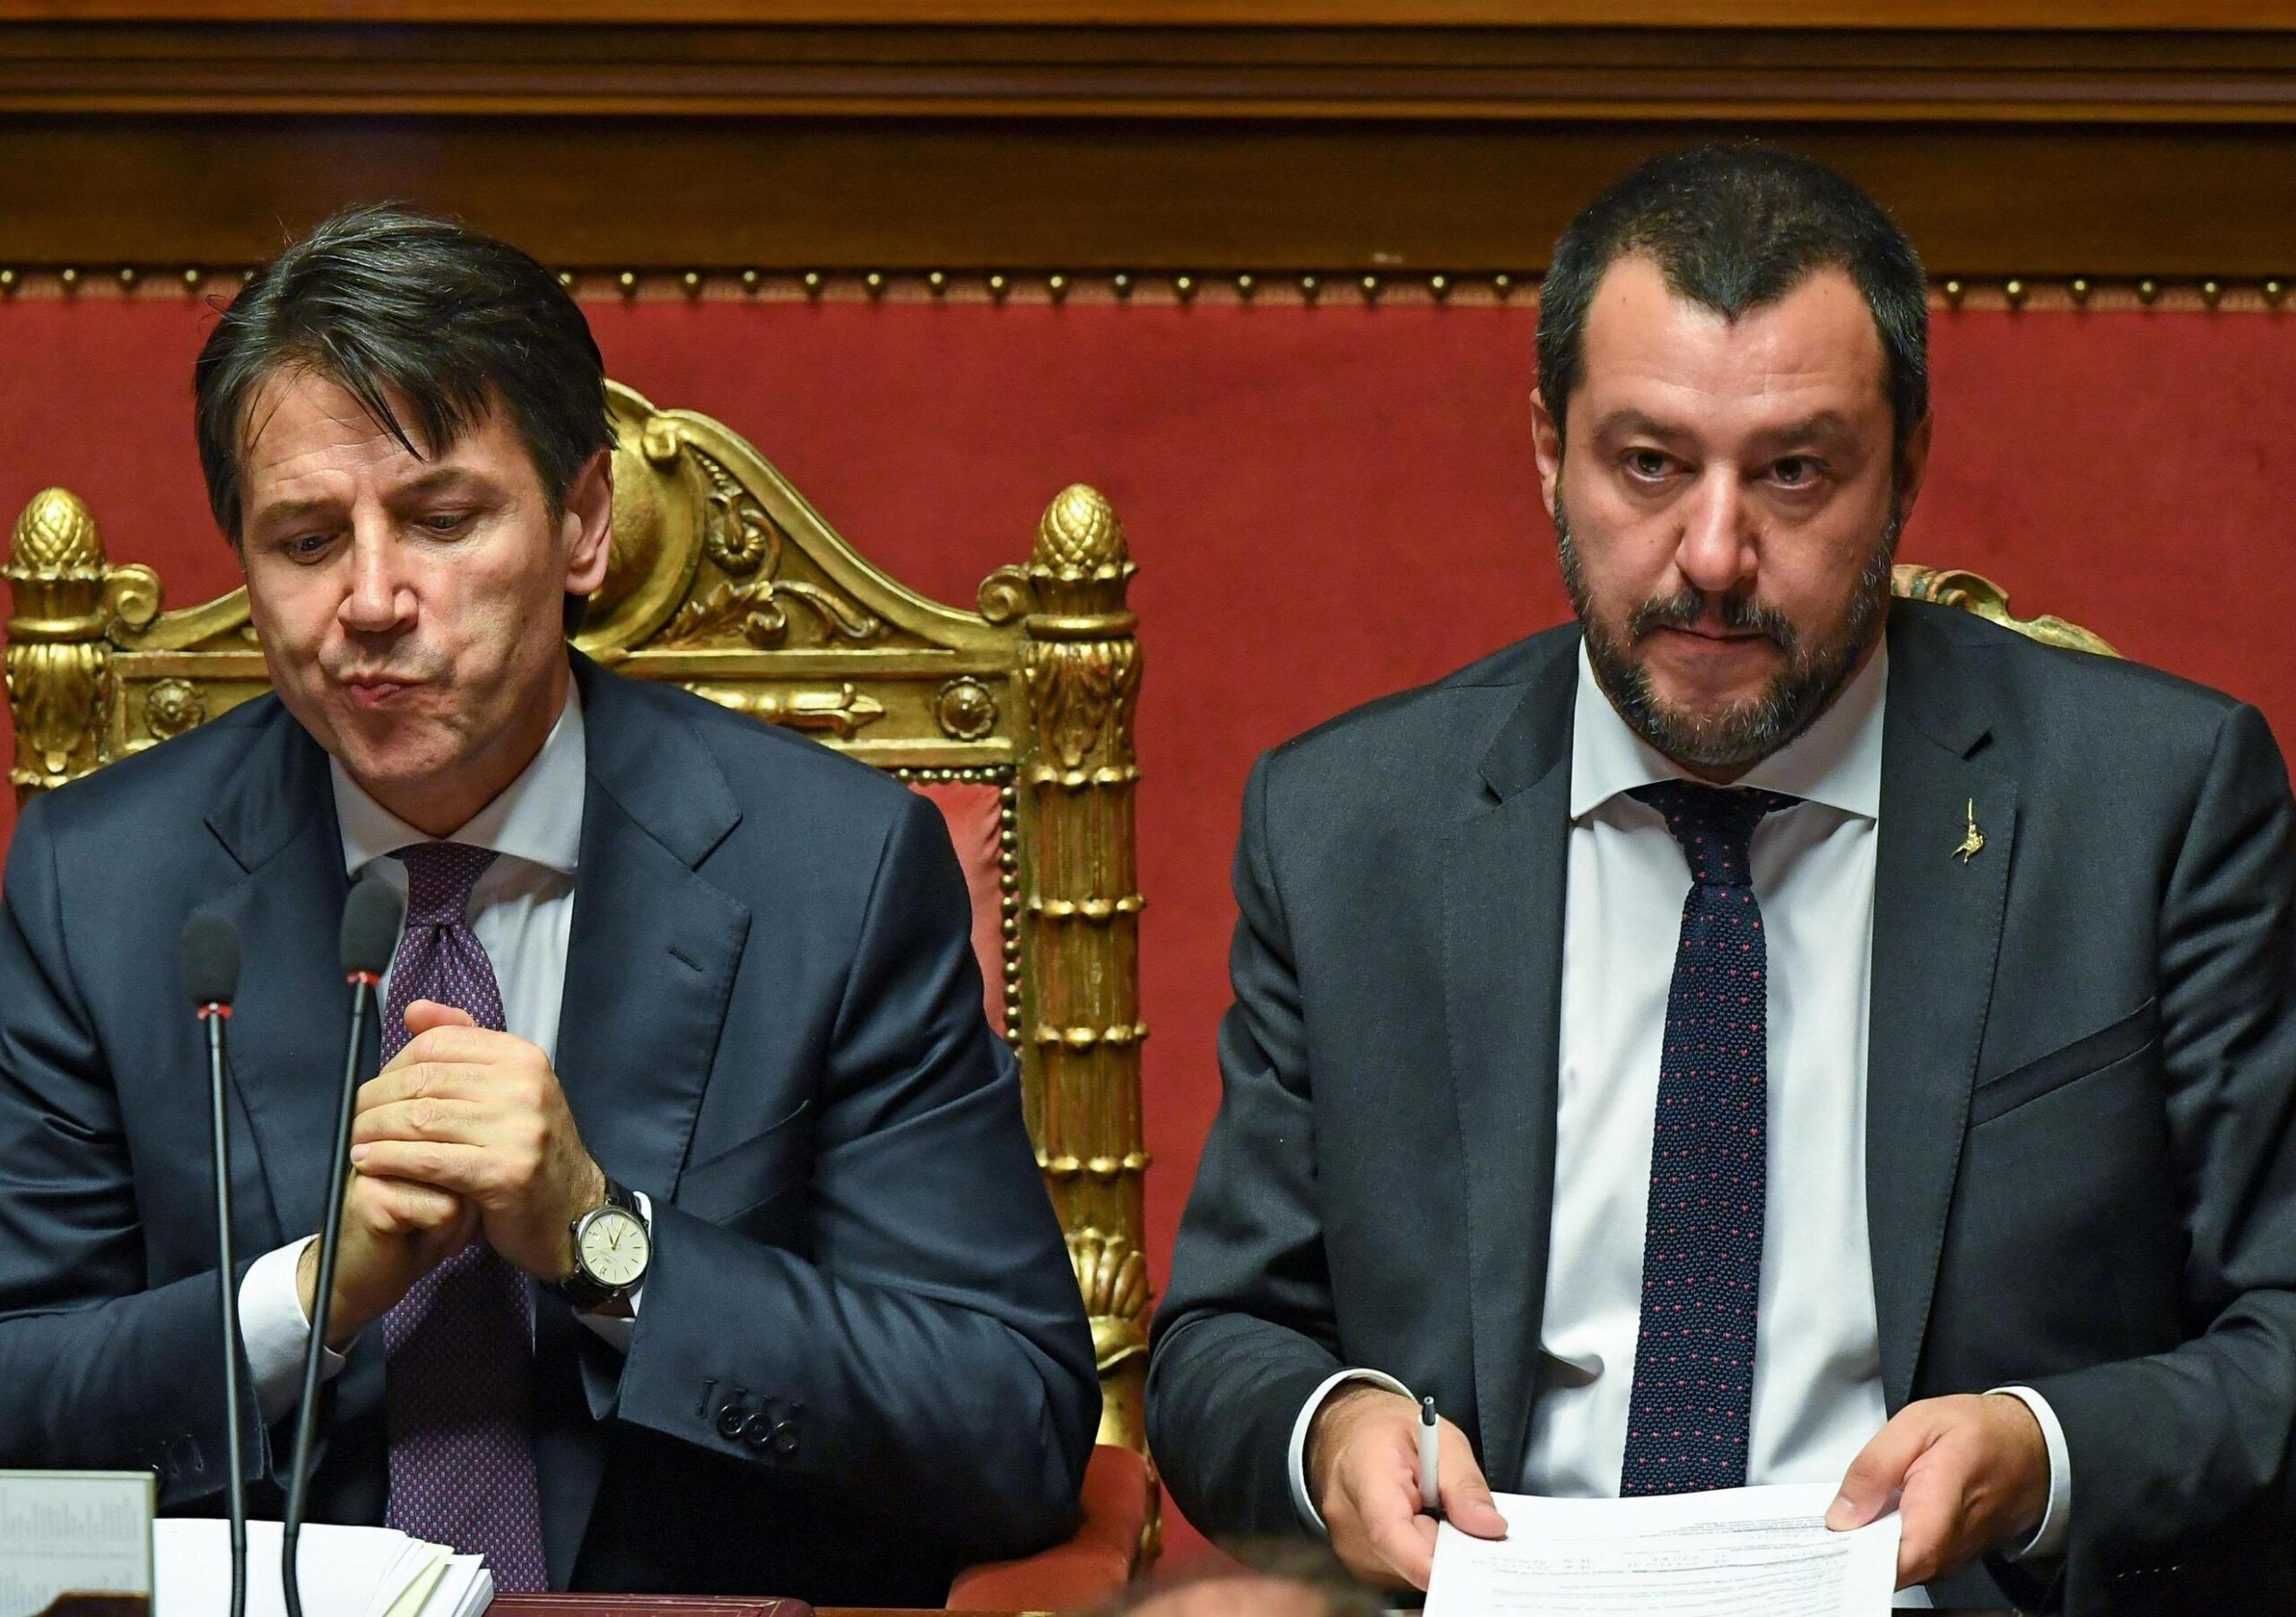 Processo Open Arms, Conte smentisce Salvini: "Terroristi a bordo? Mai ricevuto notizie in merito"